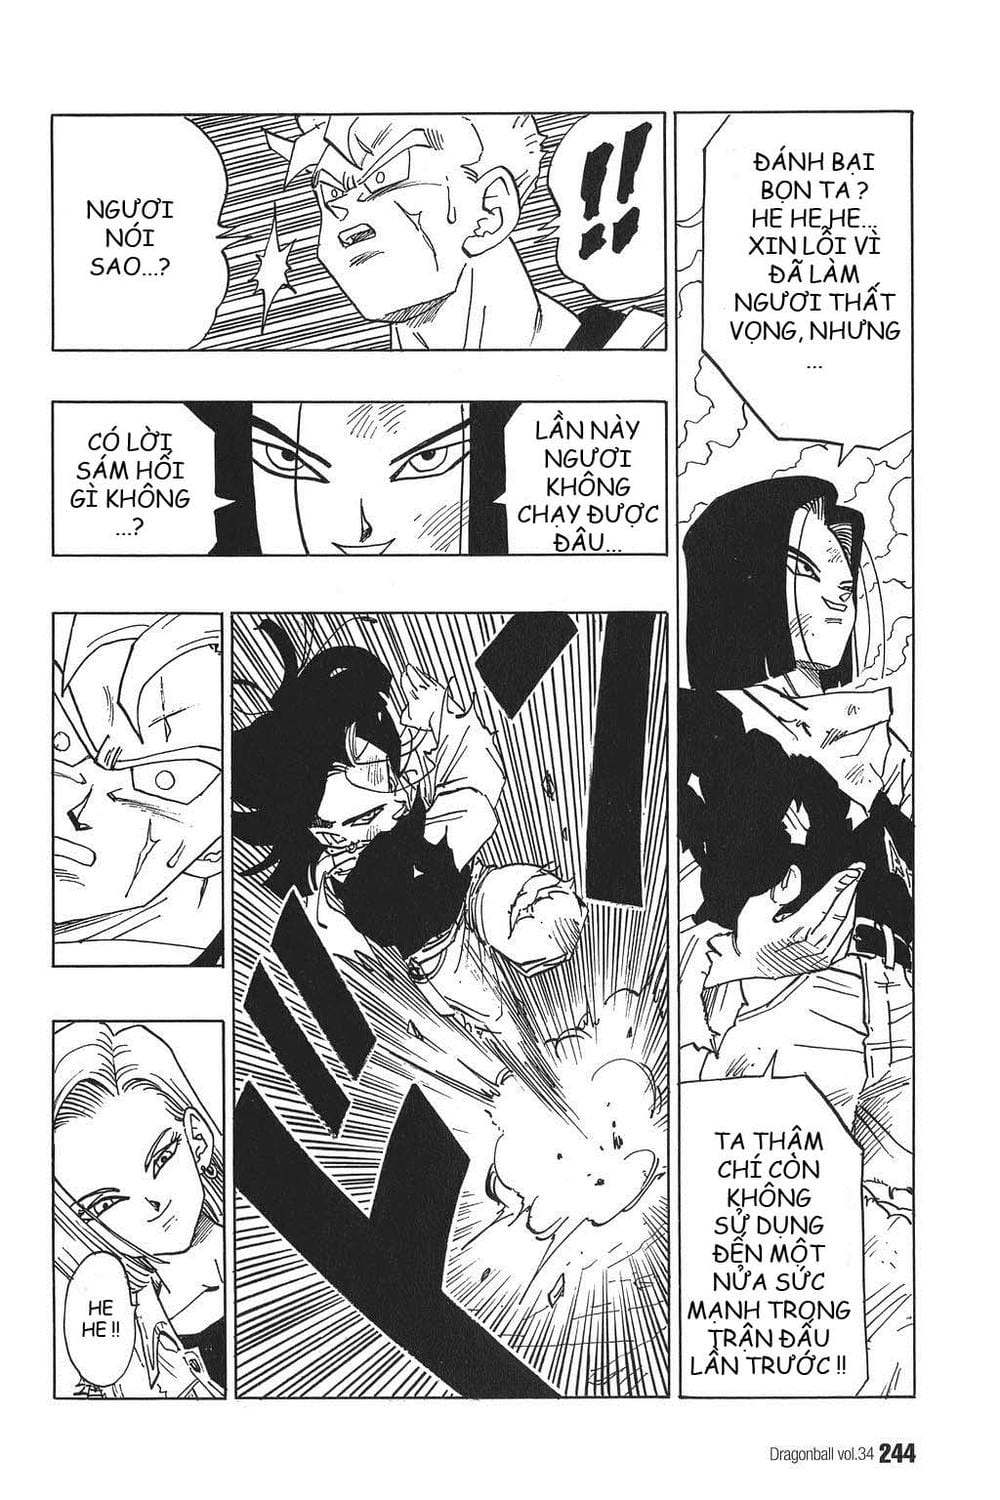 Truyện Tranh 7 Viên Ngọc Rồng - Dragon Ball trang 7870